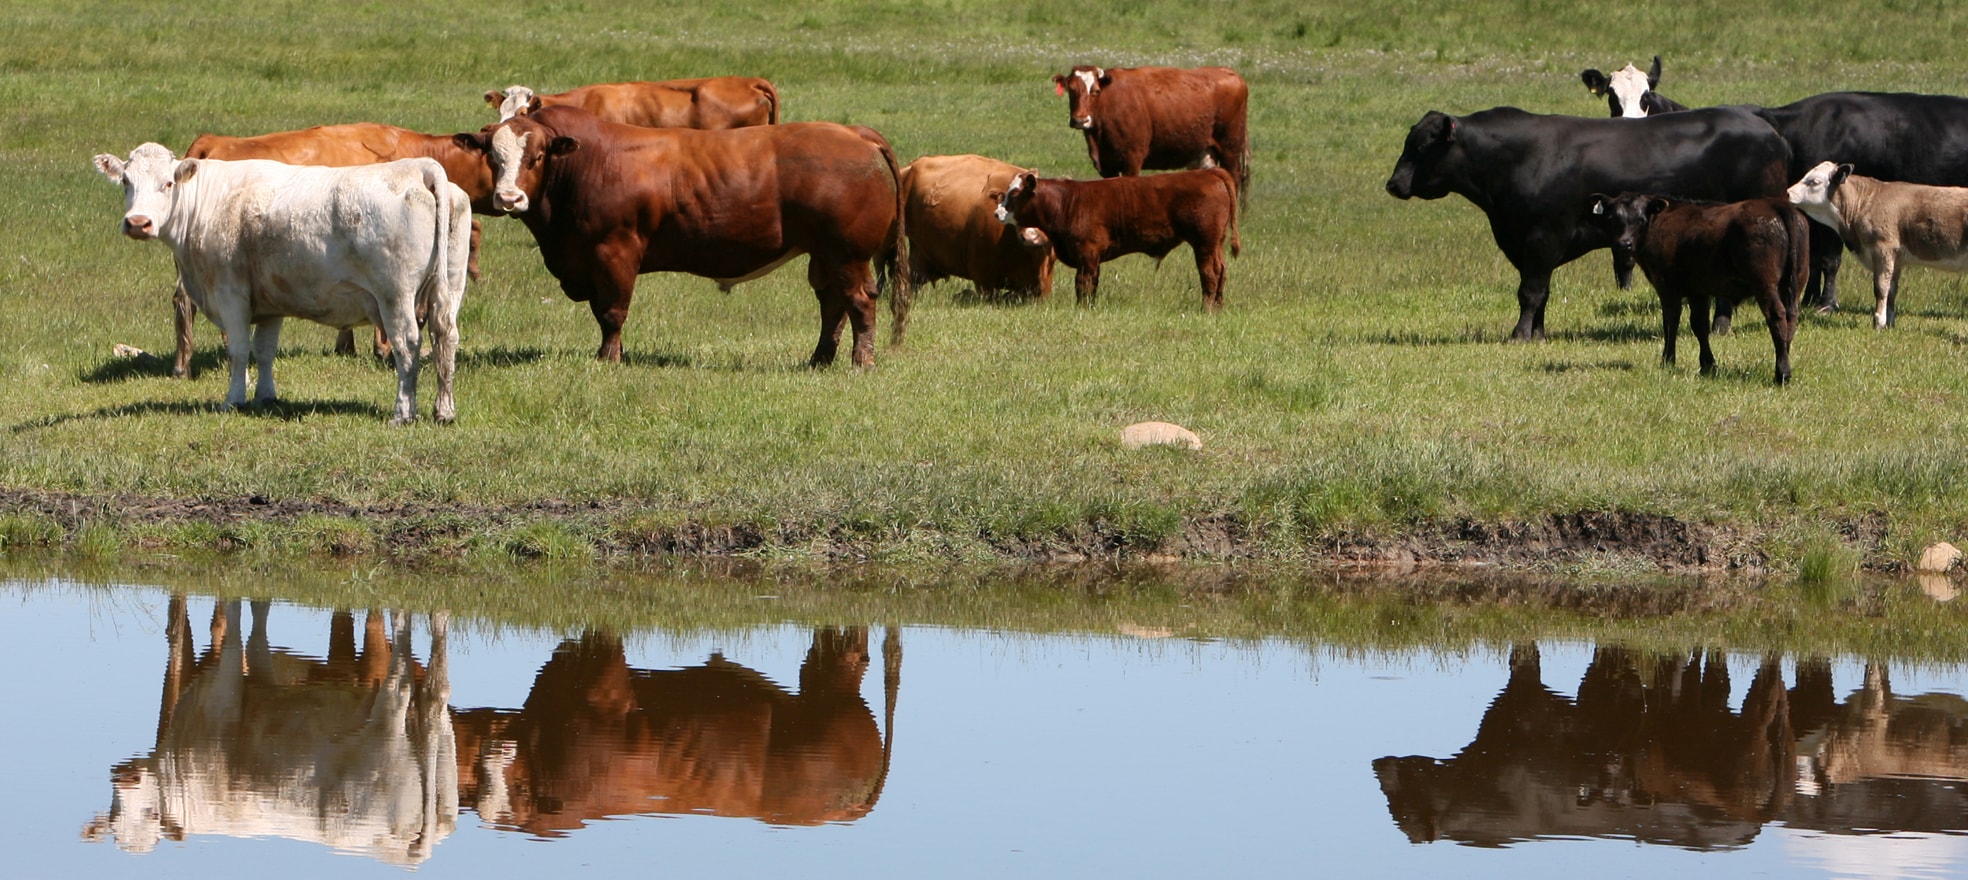 Groupe de vaches dans une ferme avec des reflets d’un plan d’eau.